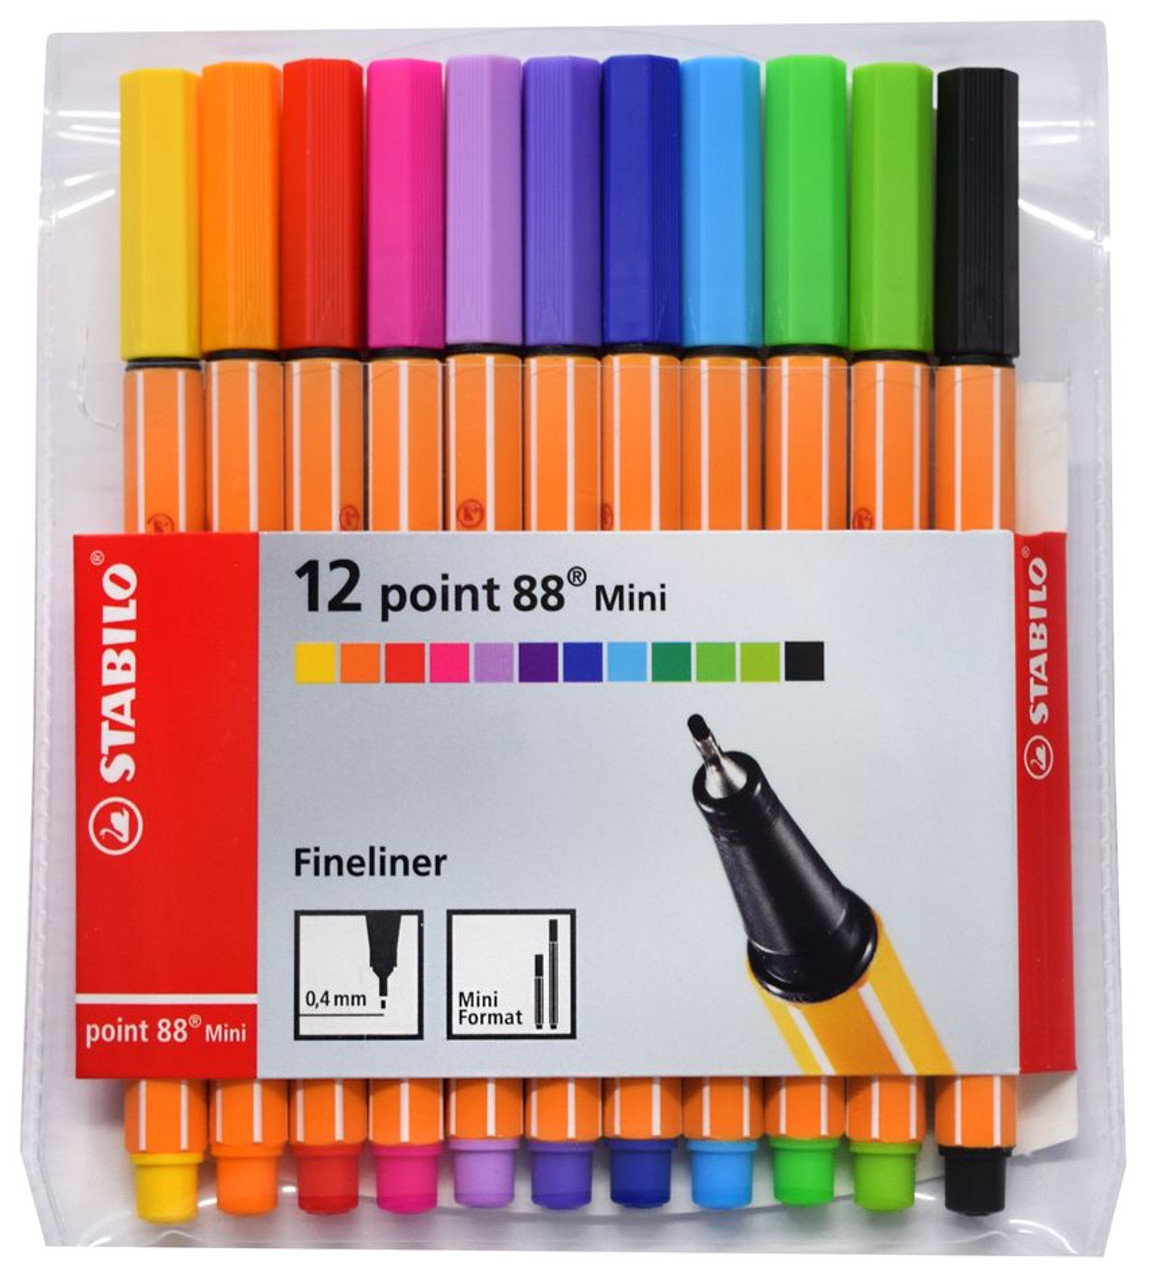 Stabilo Point 88 Fineliner Pen Set